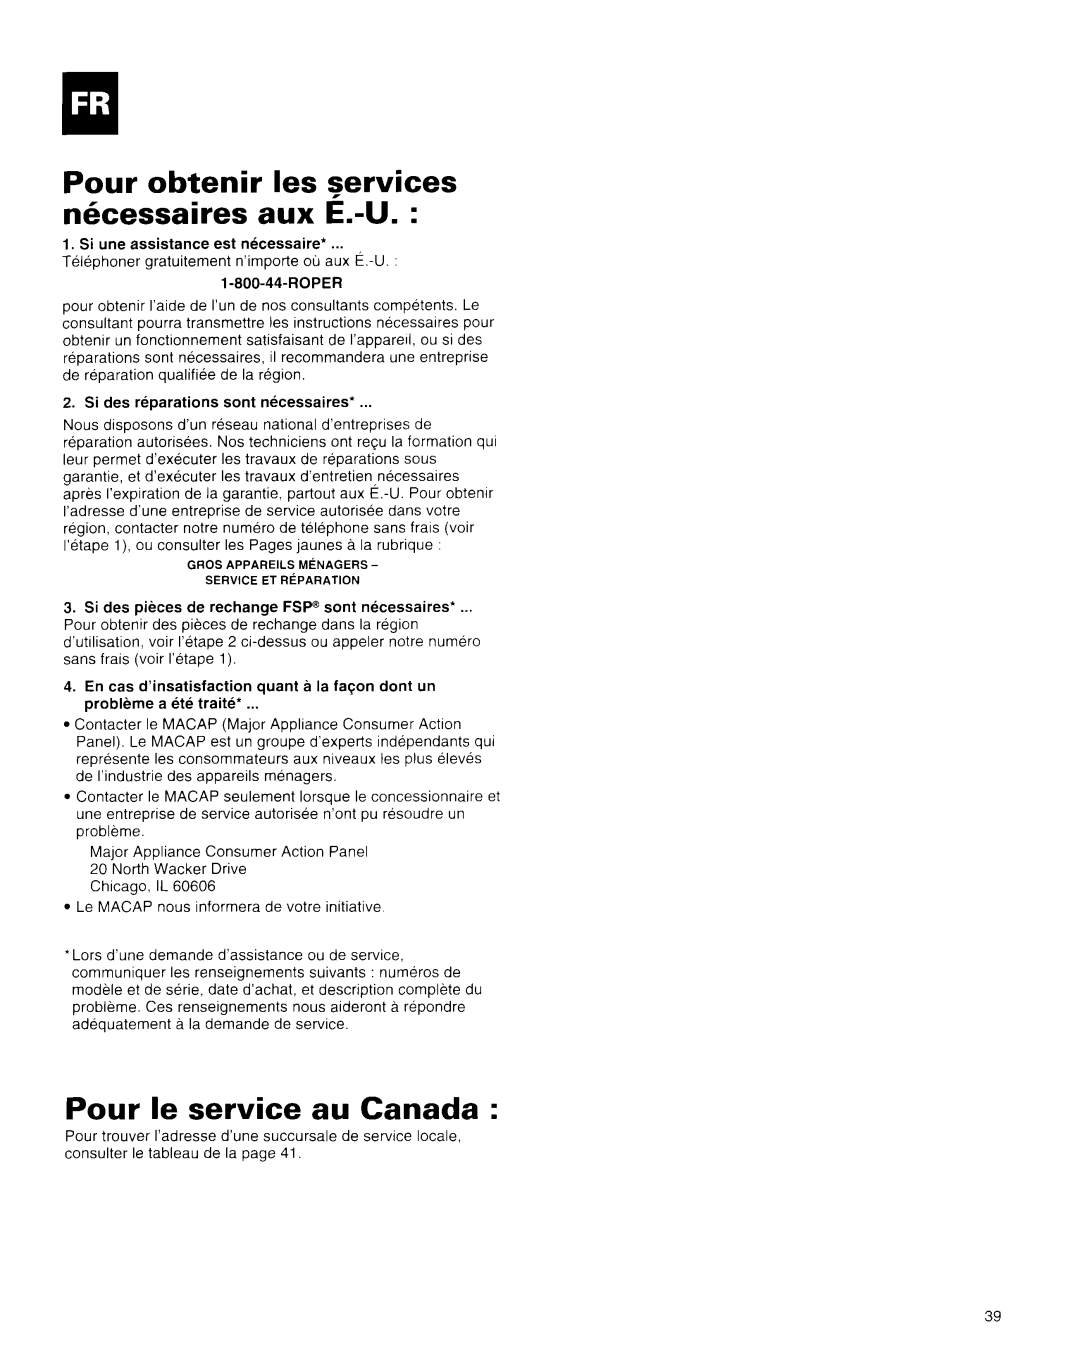 Whirlpool X18004D00 manual Pour obtenir les services mkessaires aux E.-U, Pour le service au Canada 